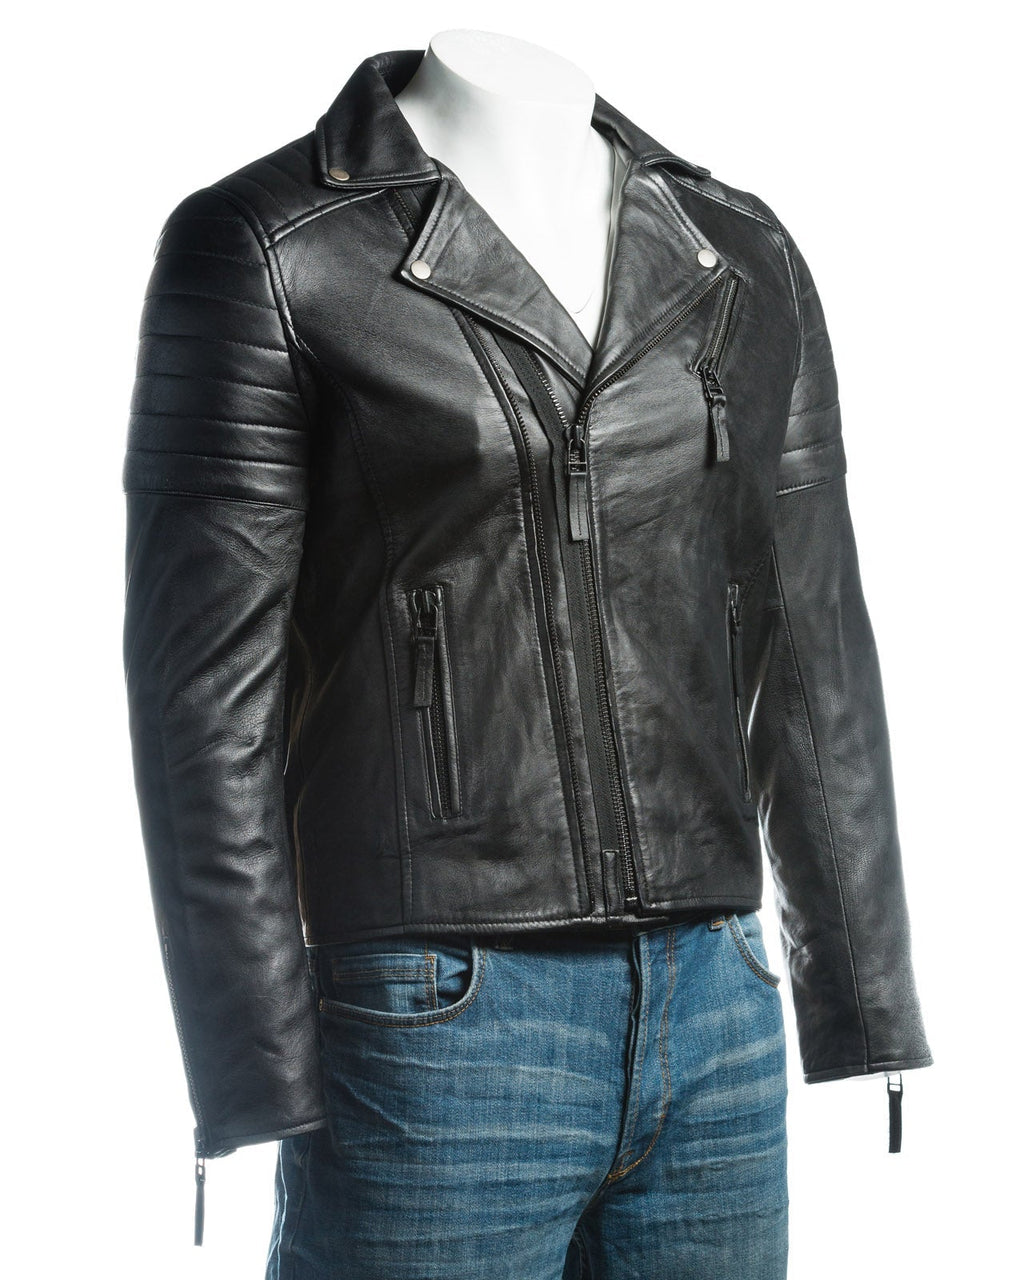 Men's Burgundy Vintage Look Biker Style Leather Jacket: Placido